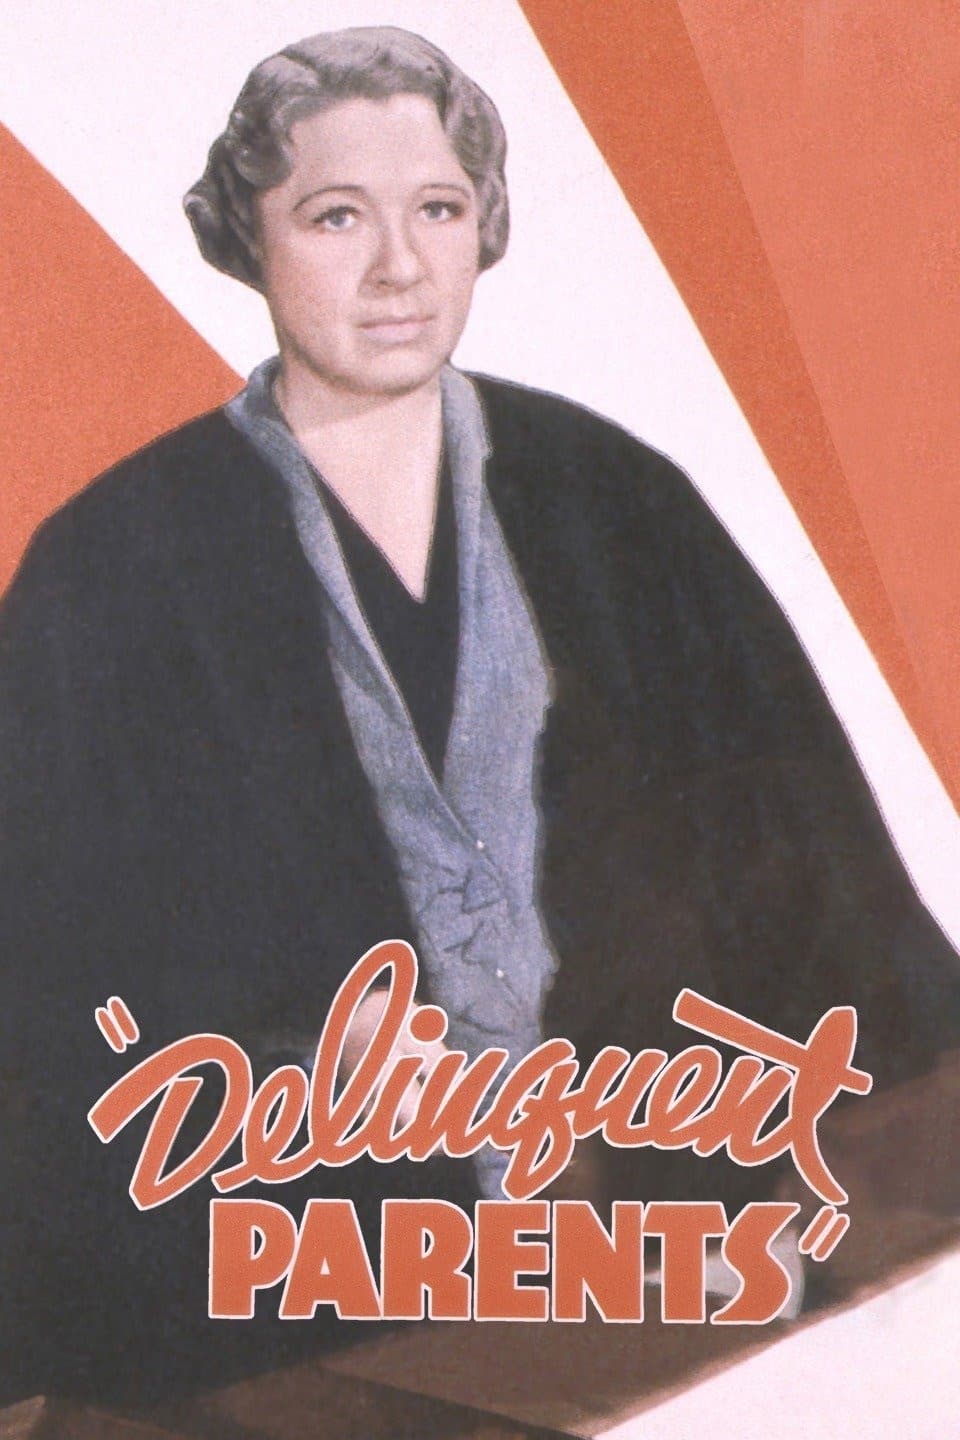 Delinquent Parents (1938)